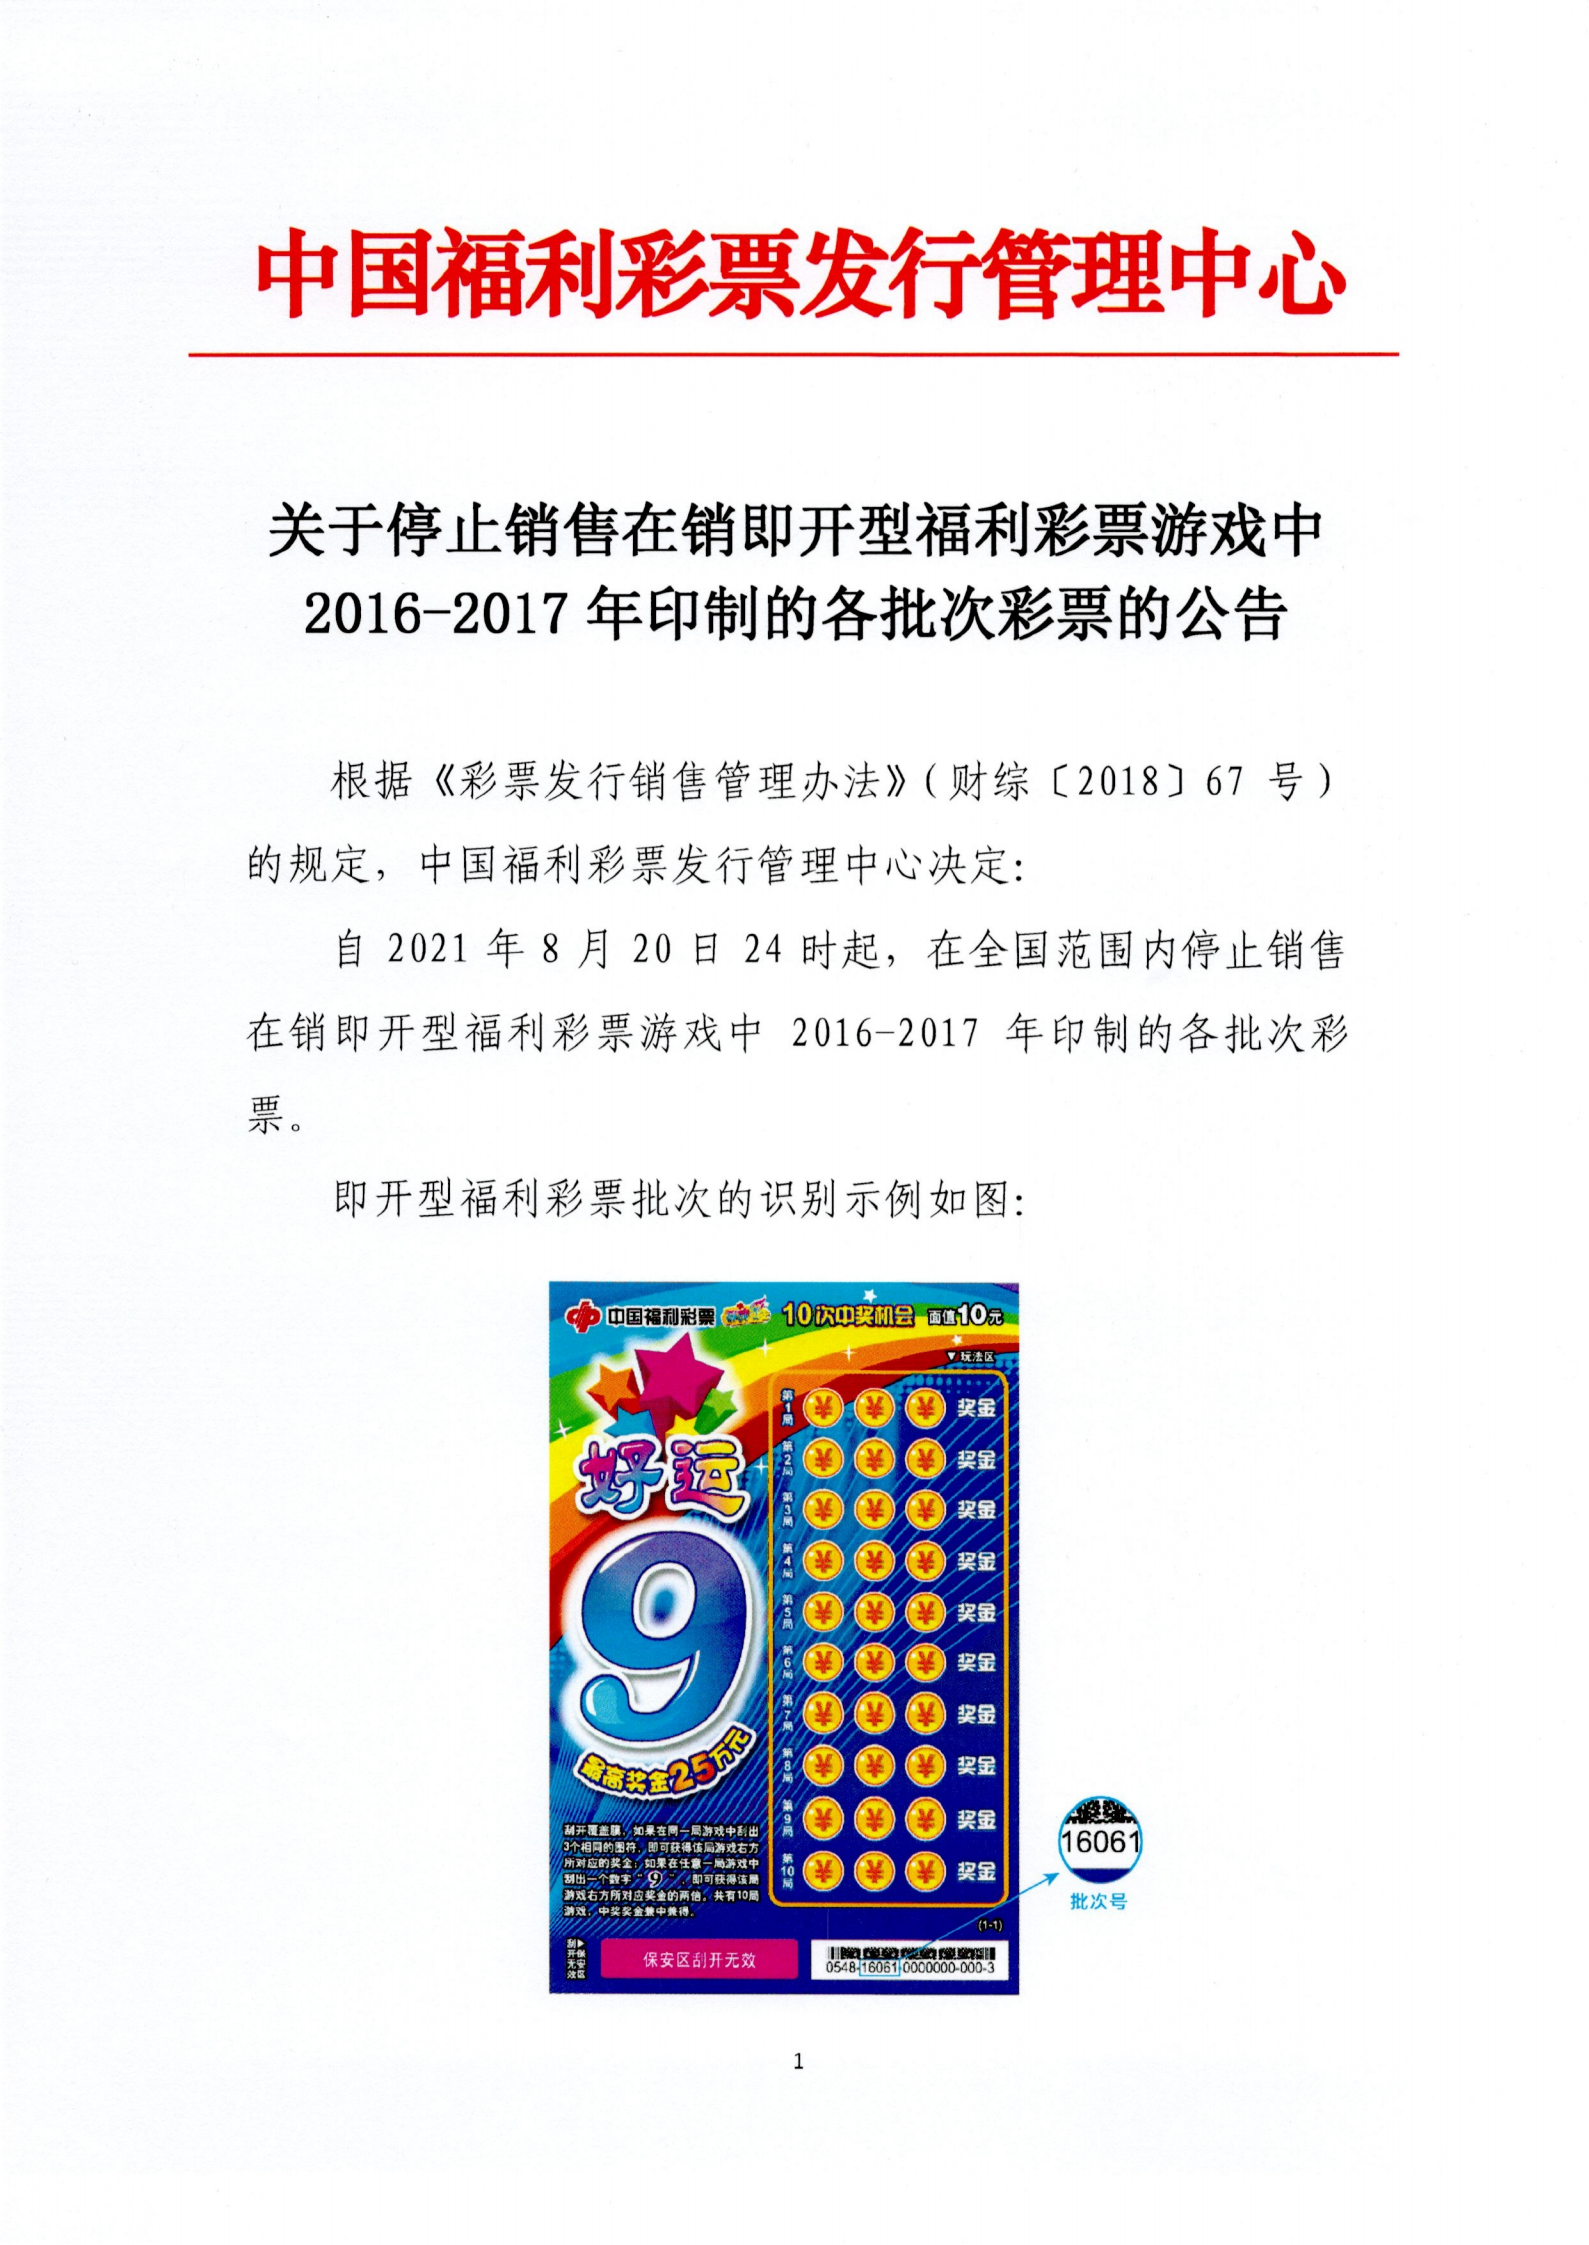 附件1-关于停止销售在销即开型福利彩票游戏中2016-2017年印制的各批次彩票的公告_00.png